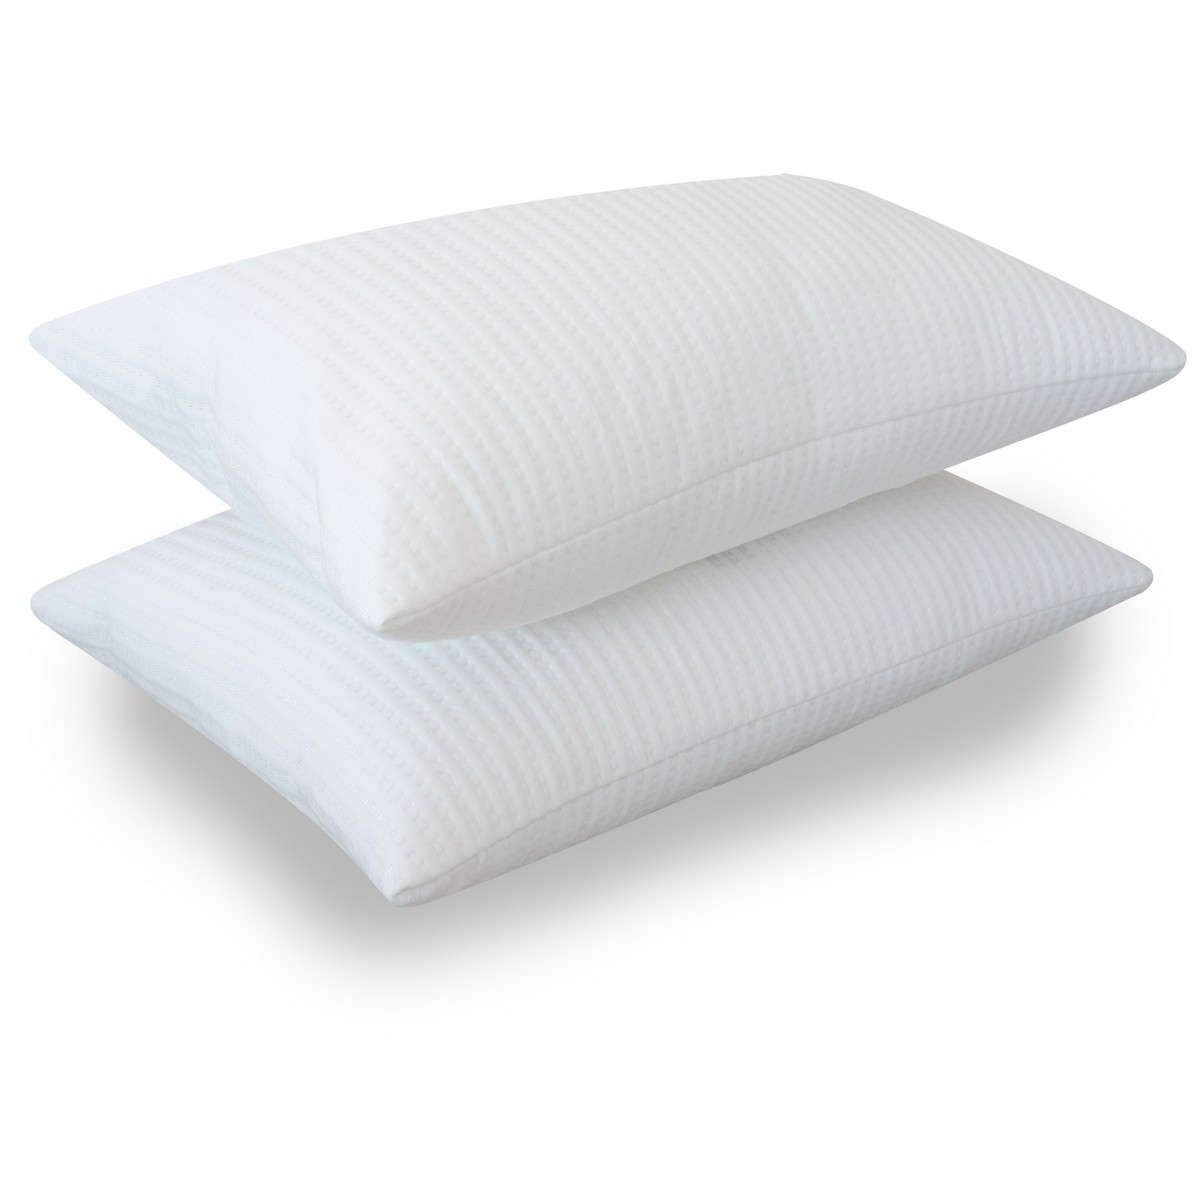 Αδιάβροχο προστατευτικό κάλυμμα μαξιλαριού Clean plus bed&home